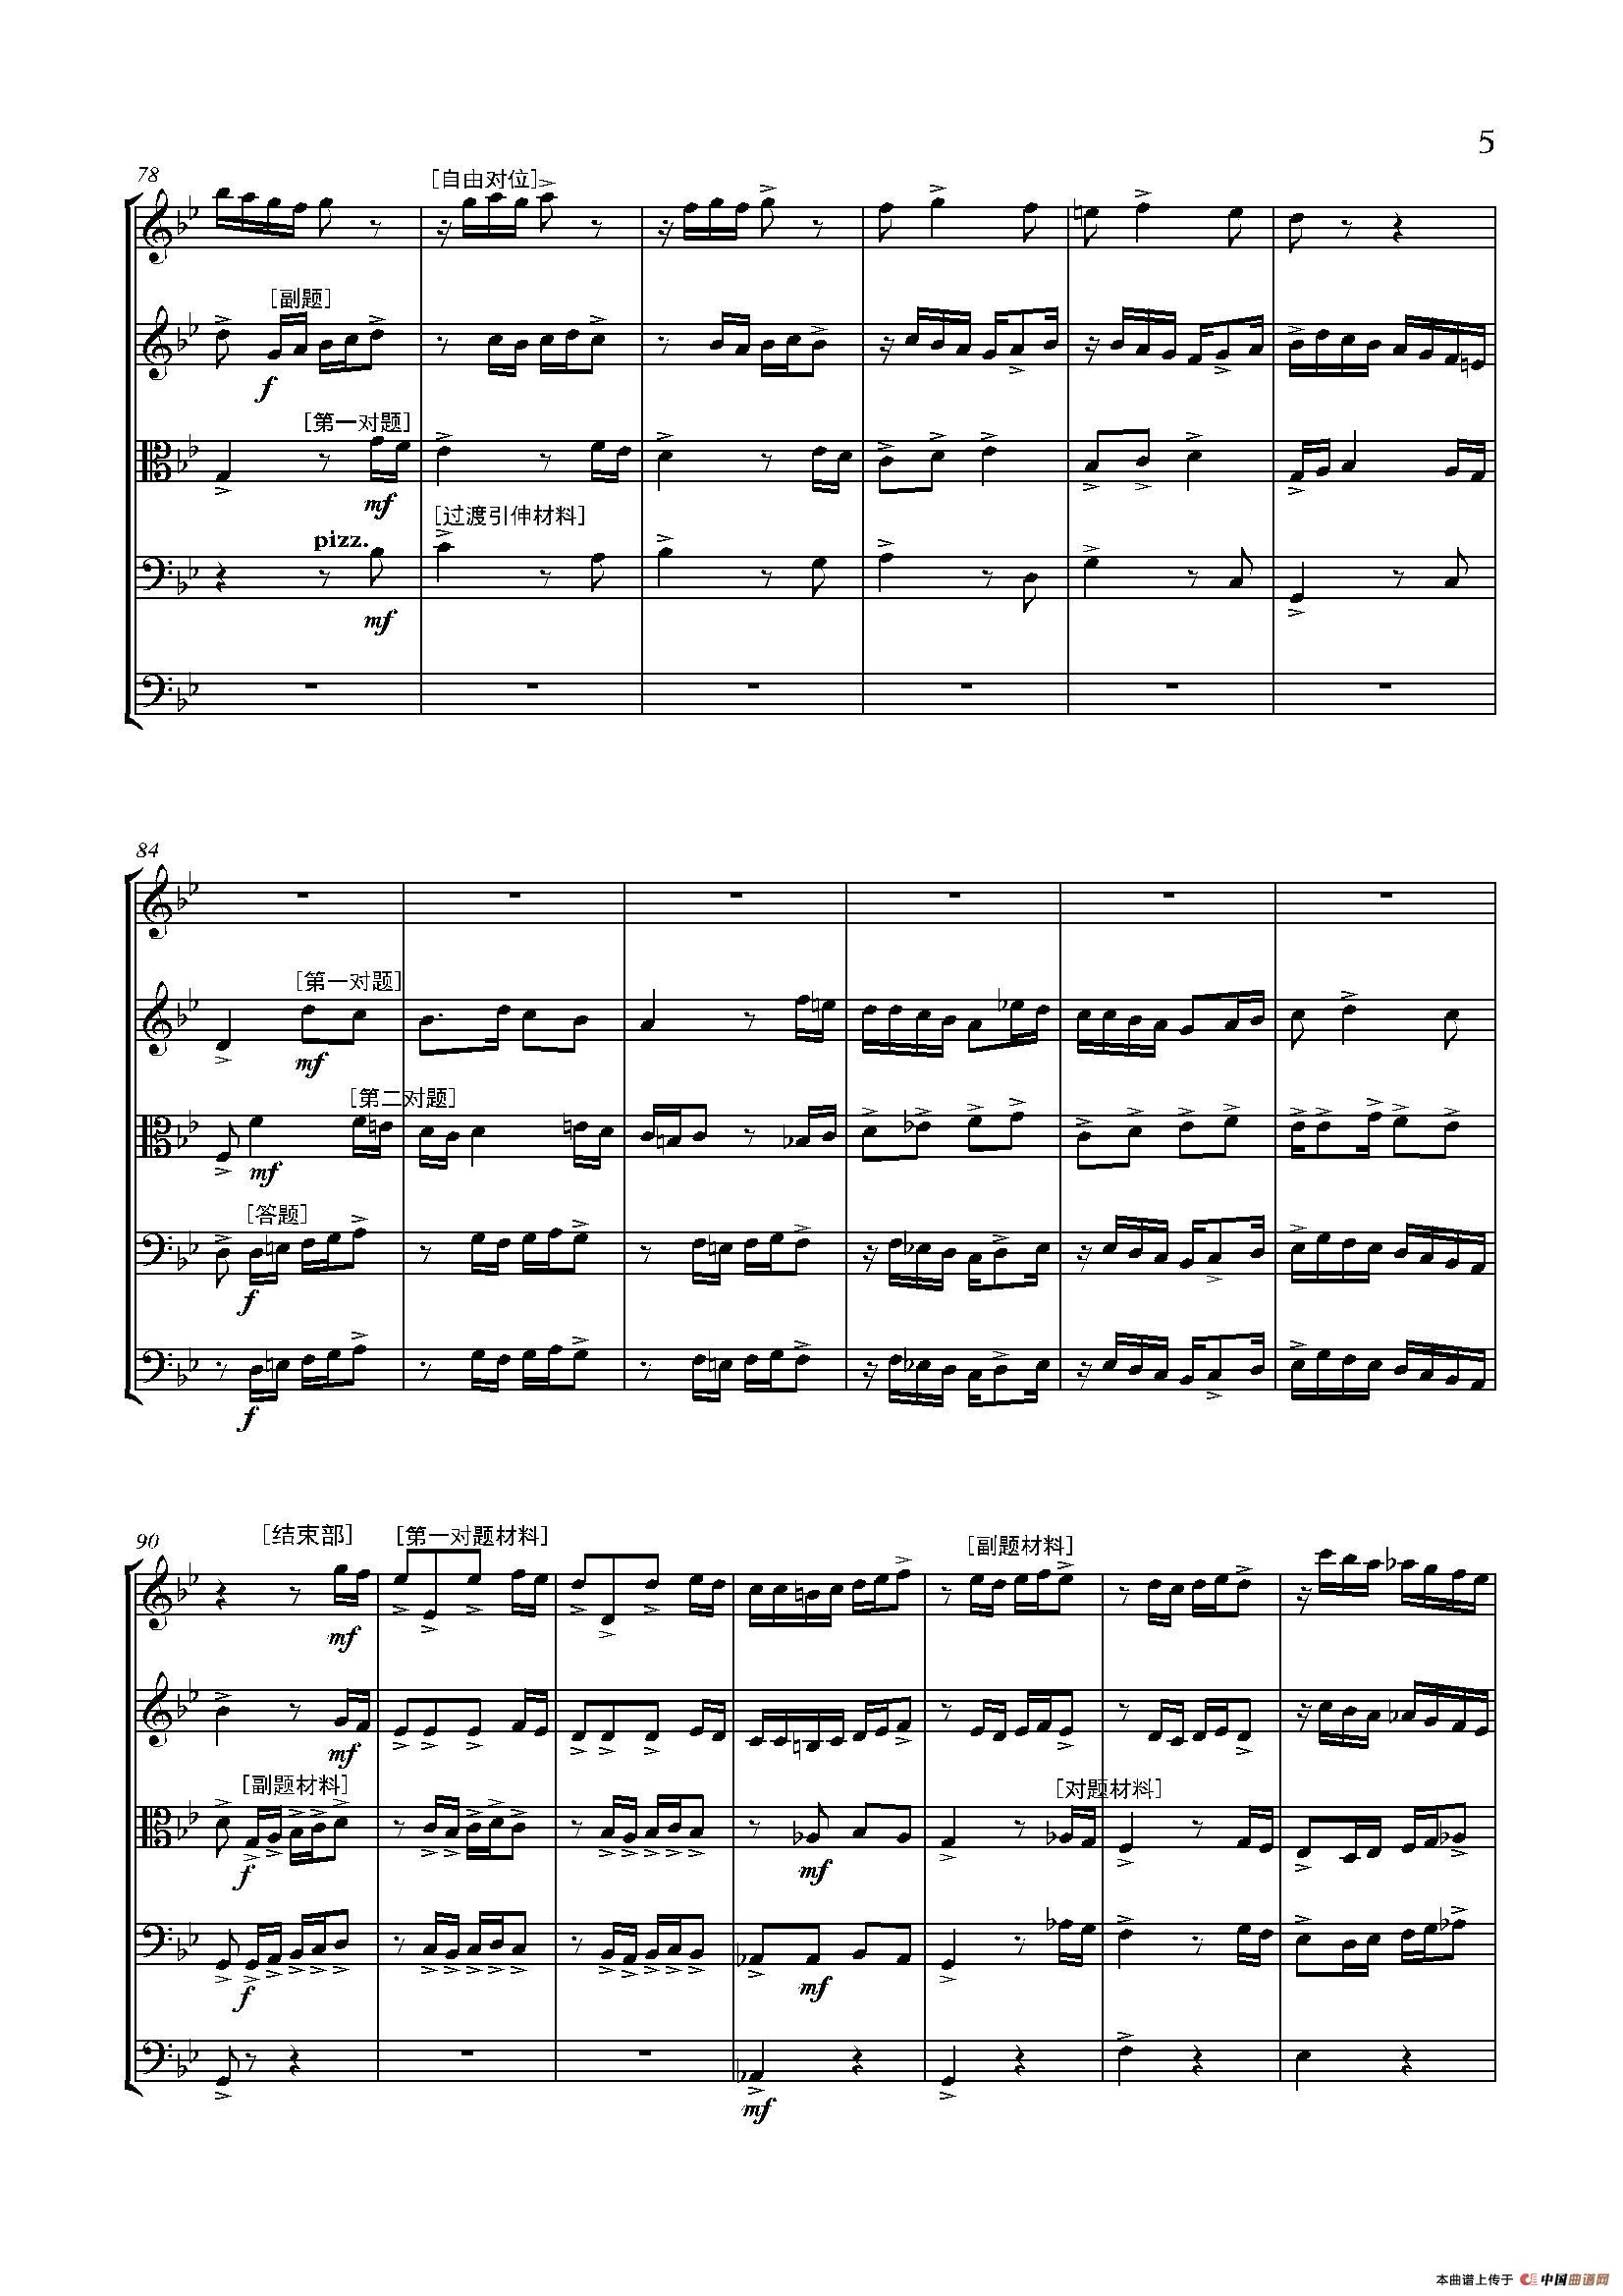 弦乐大赋格·丝绸之路上的哲学沉思（五重奏）小提琴谱